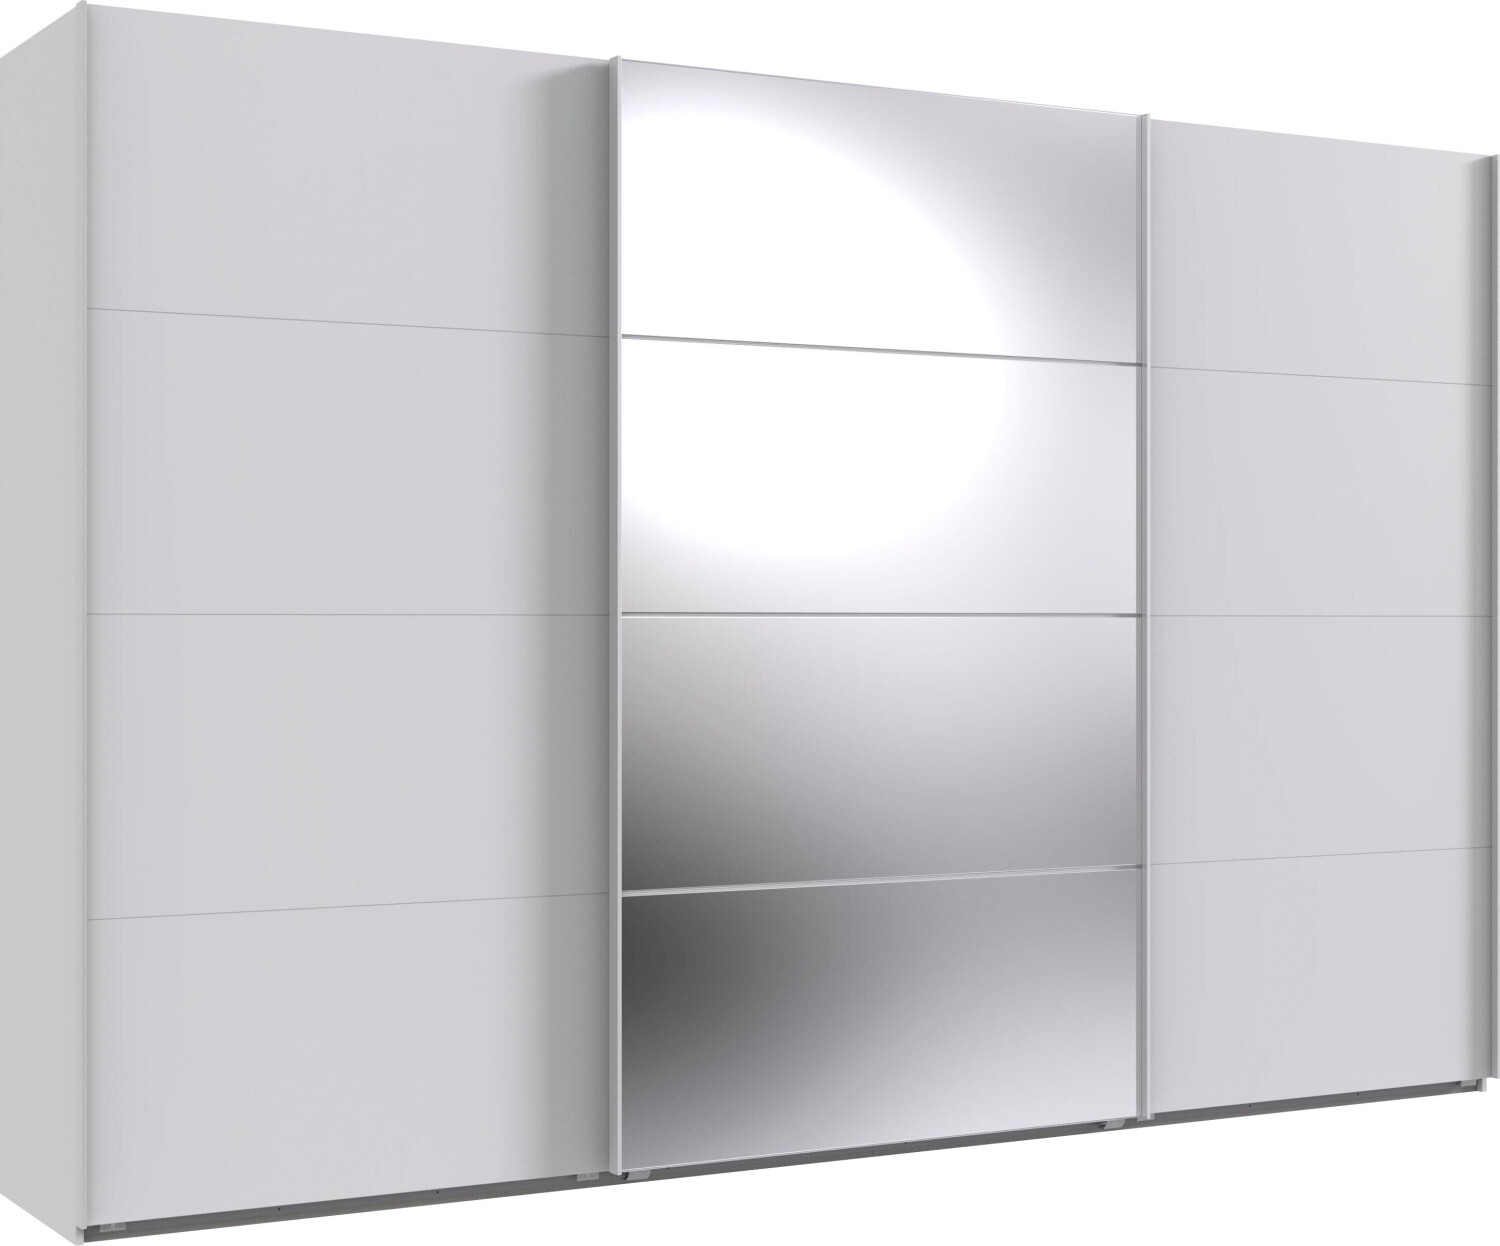 Wimex Norderstedt 360x236cm weiß/Spiegel ab 969,99 € | Preisvergleich bei